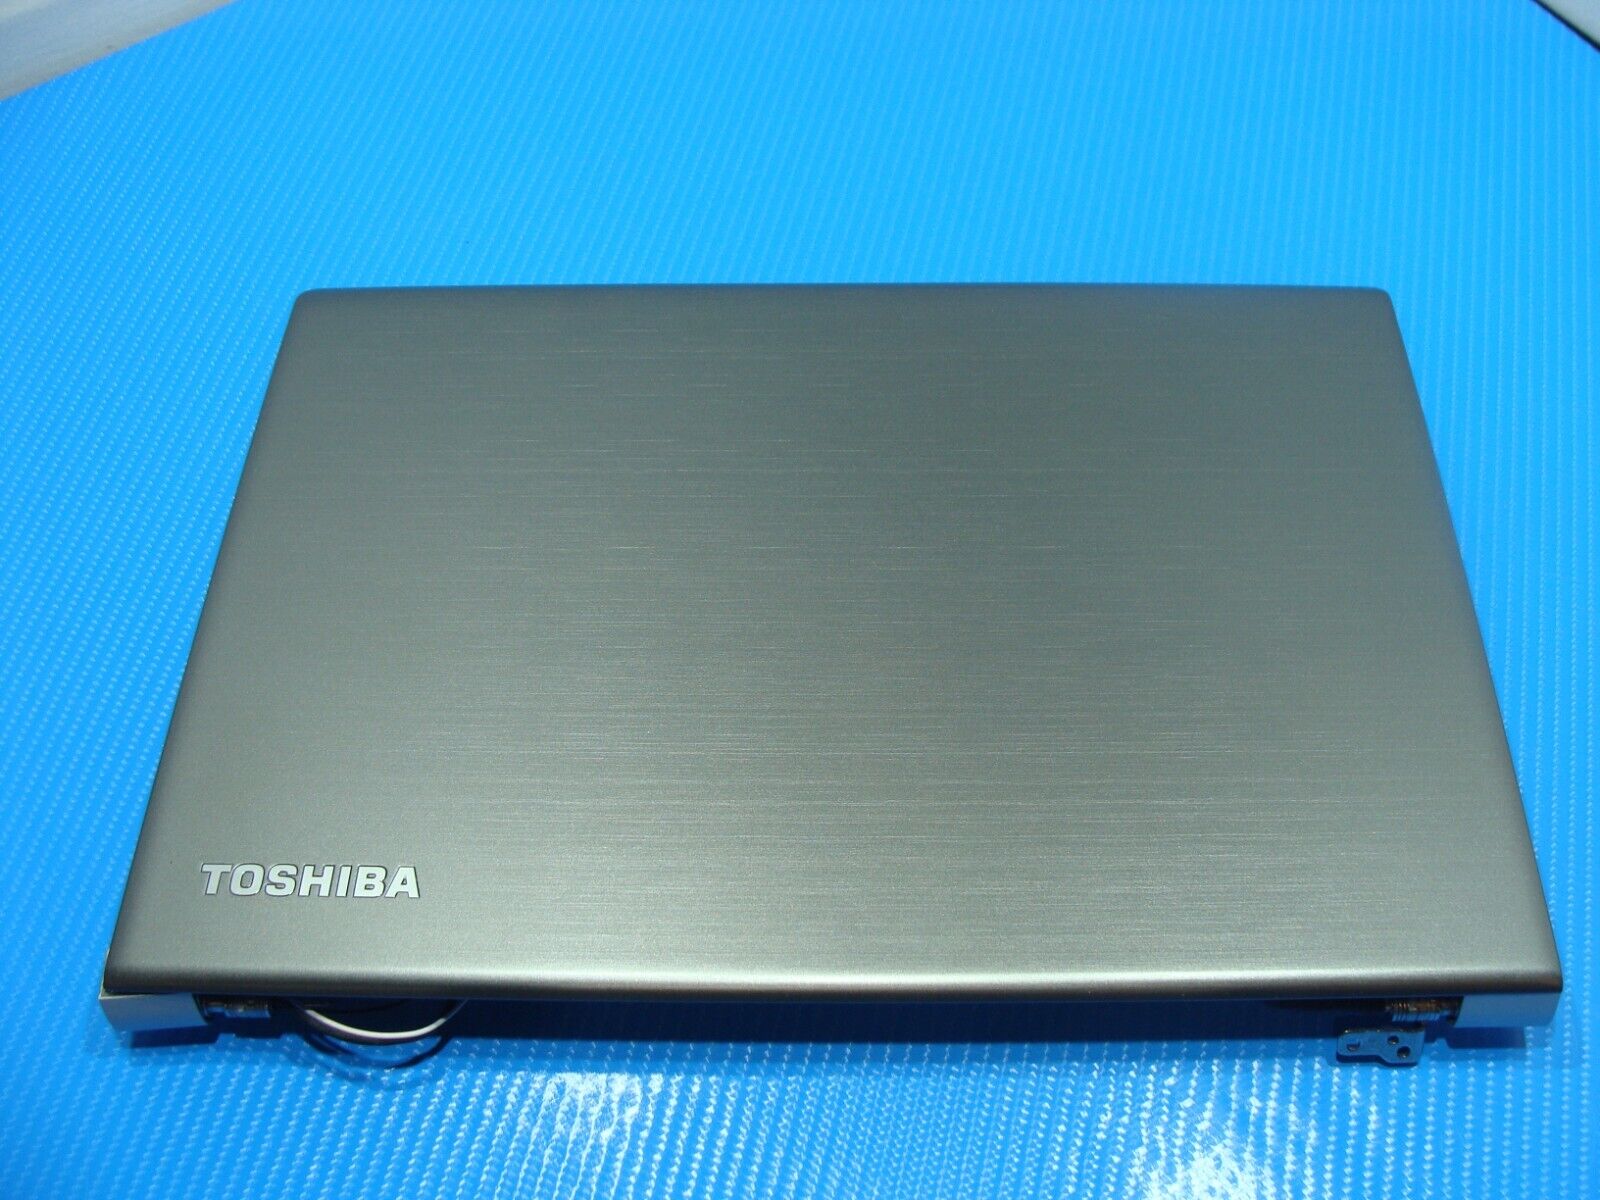 Toshiba Portege 13.3